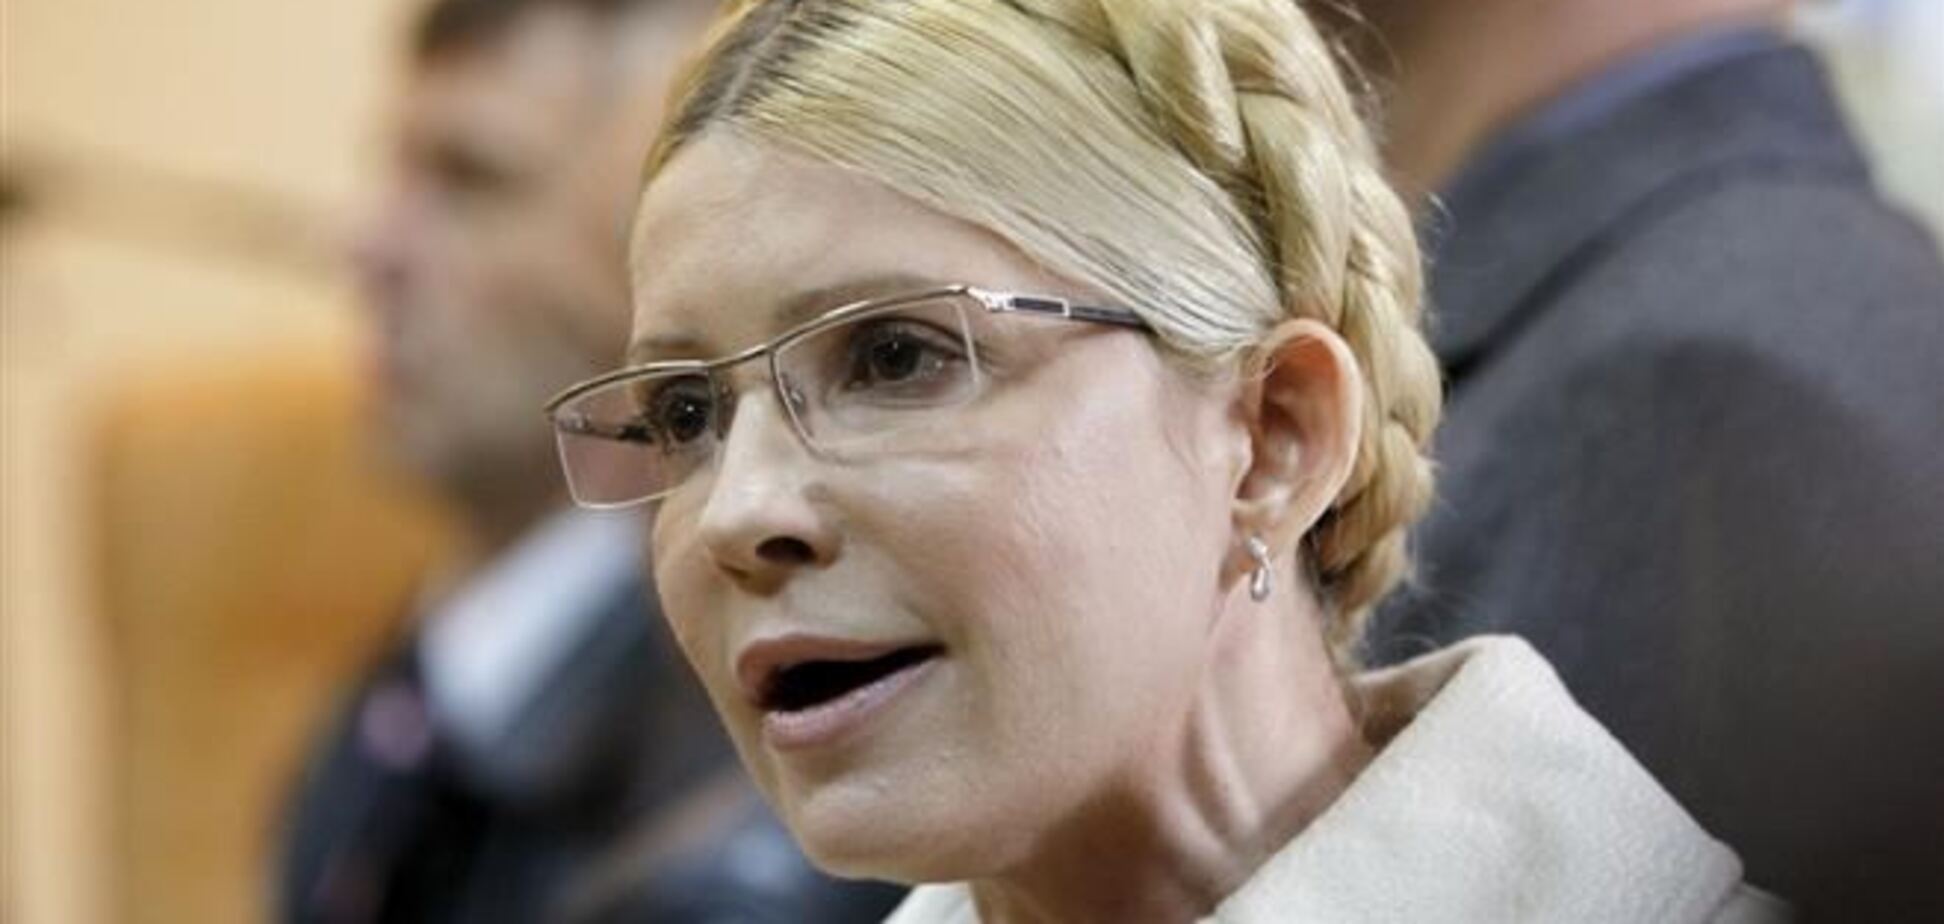 ПР: оппозиция предлагает разработать совершенно никчемный законопроект по Тимошенко